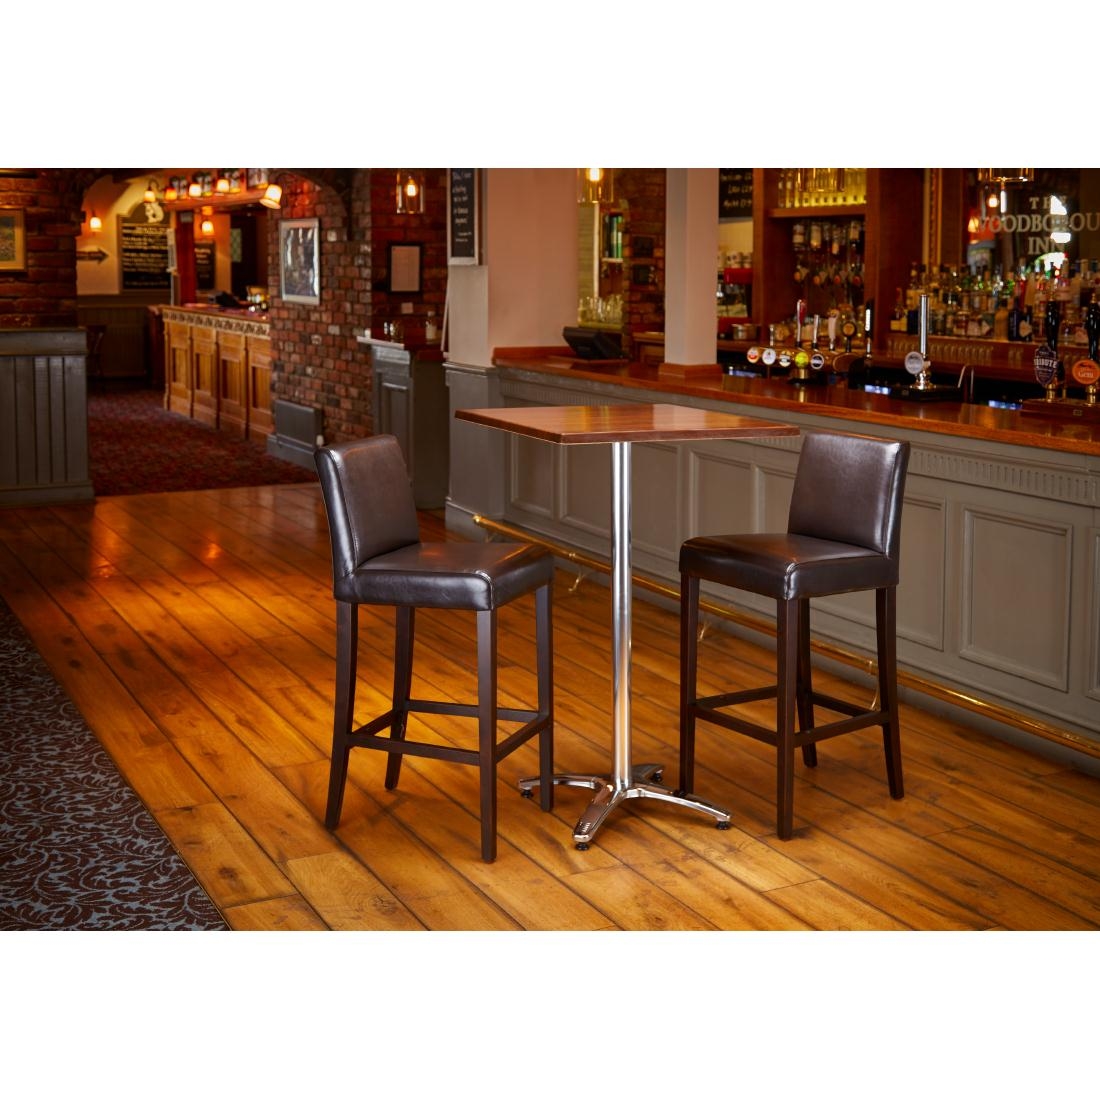 woodborough-inn-table-chairs (1)